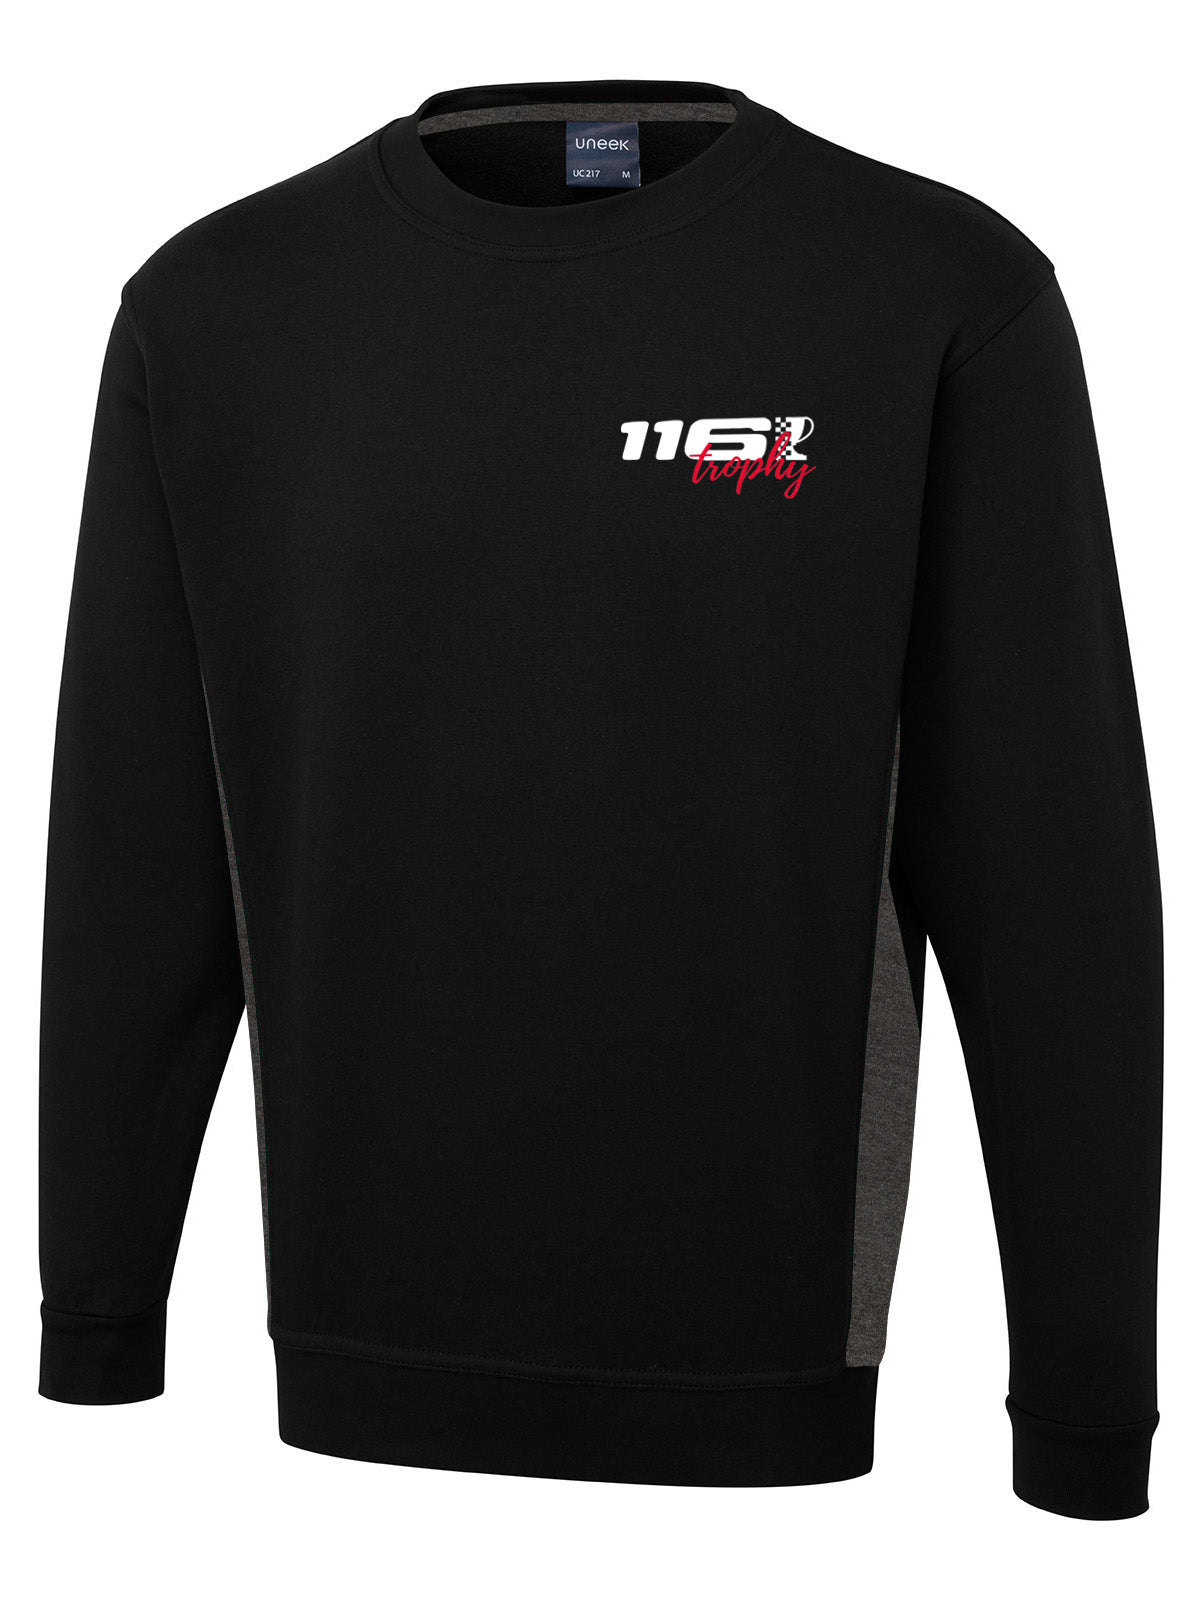 116 Trophy Unisex Two-Tone Sweatshirt